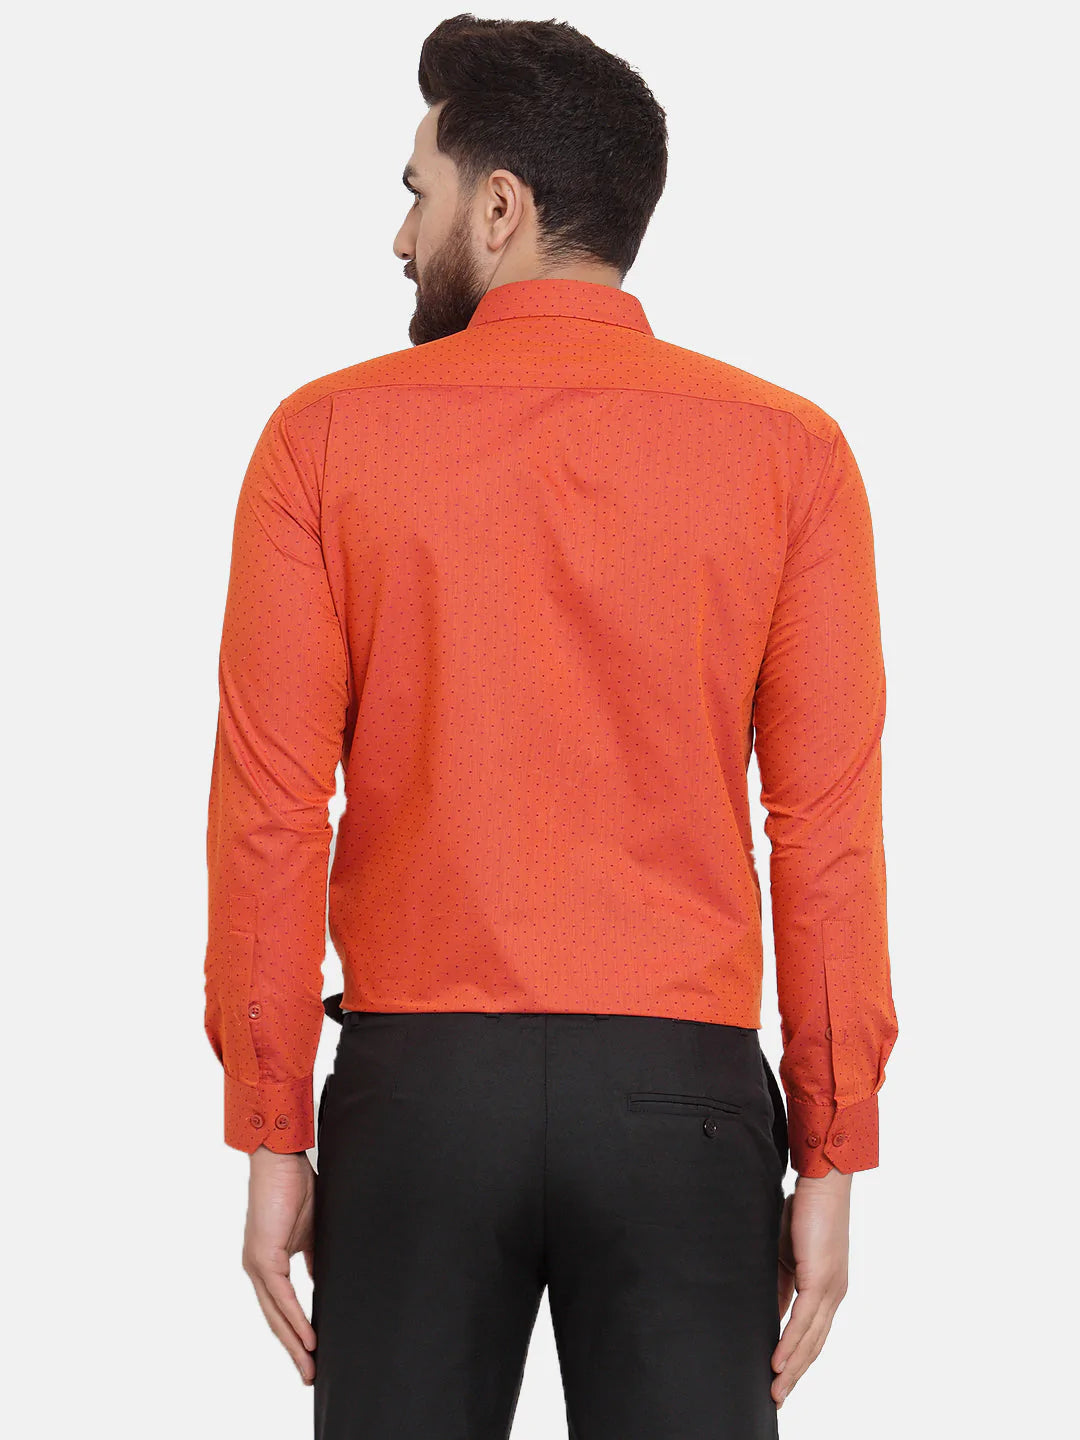 Jainish Orange Men's Cotton Polka Dots Formal Shirts ( SF 739Orange )